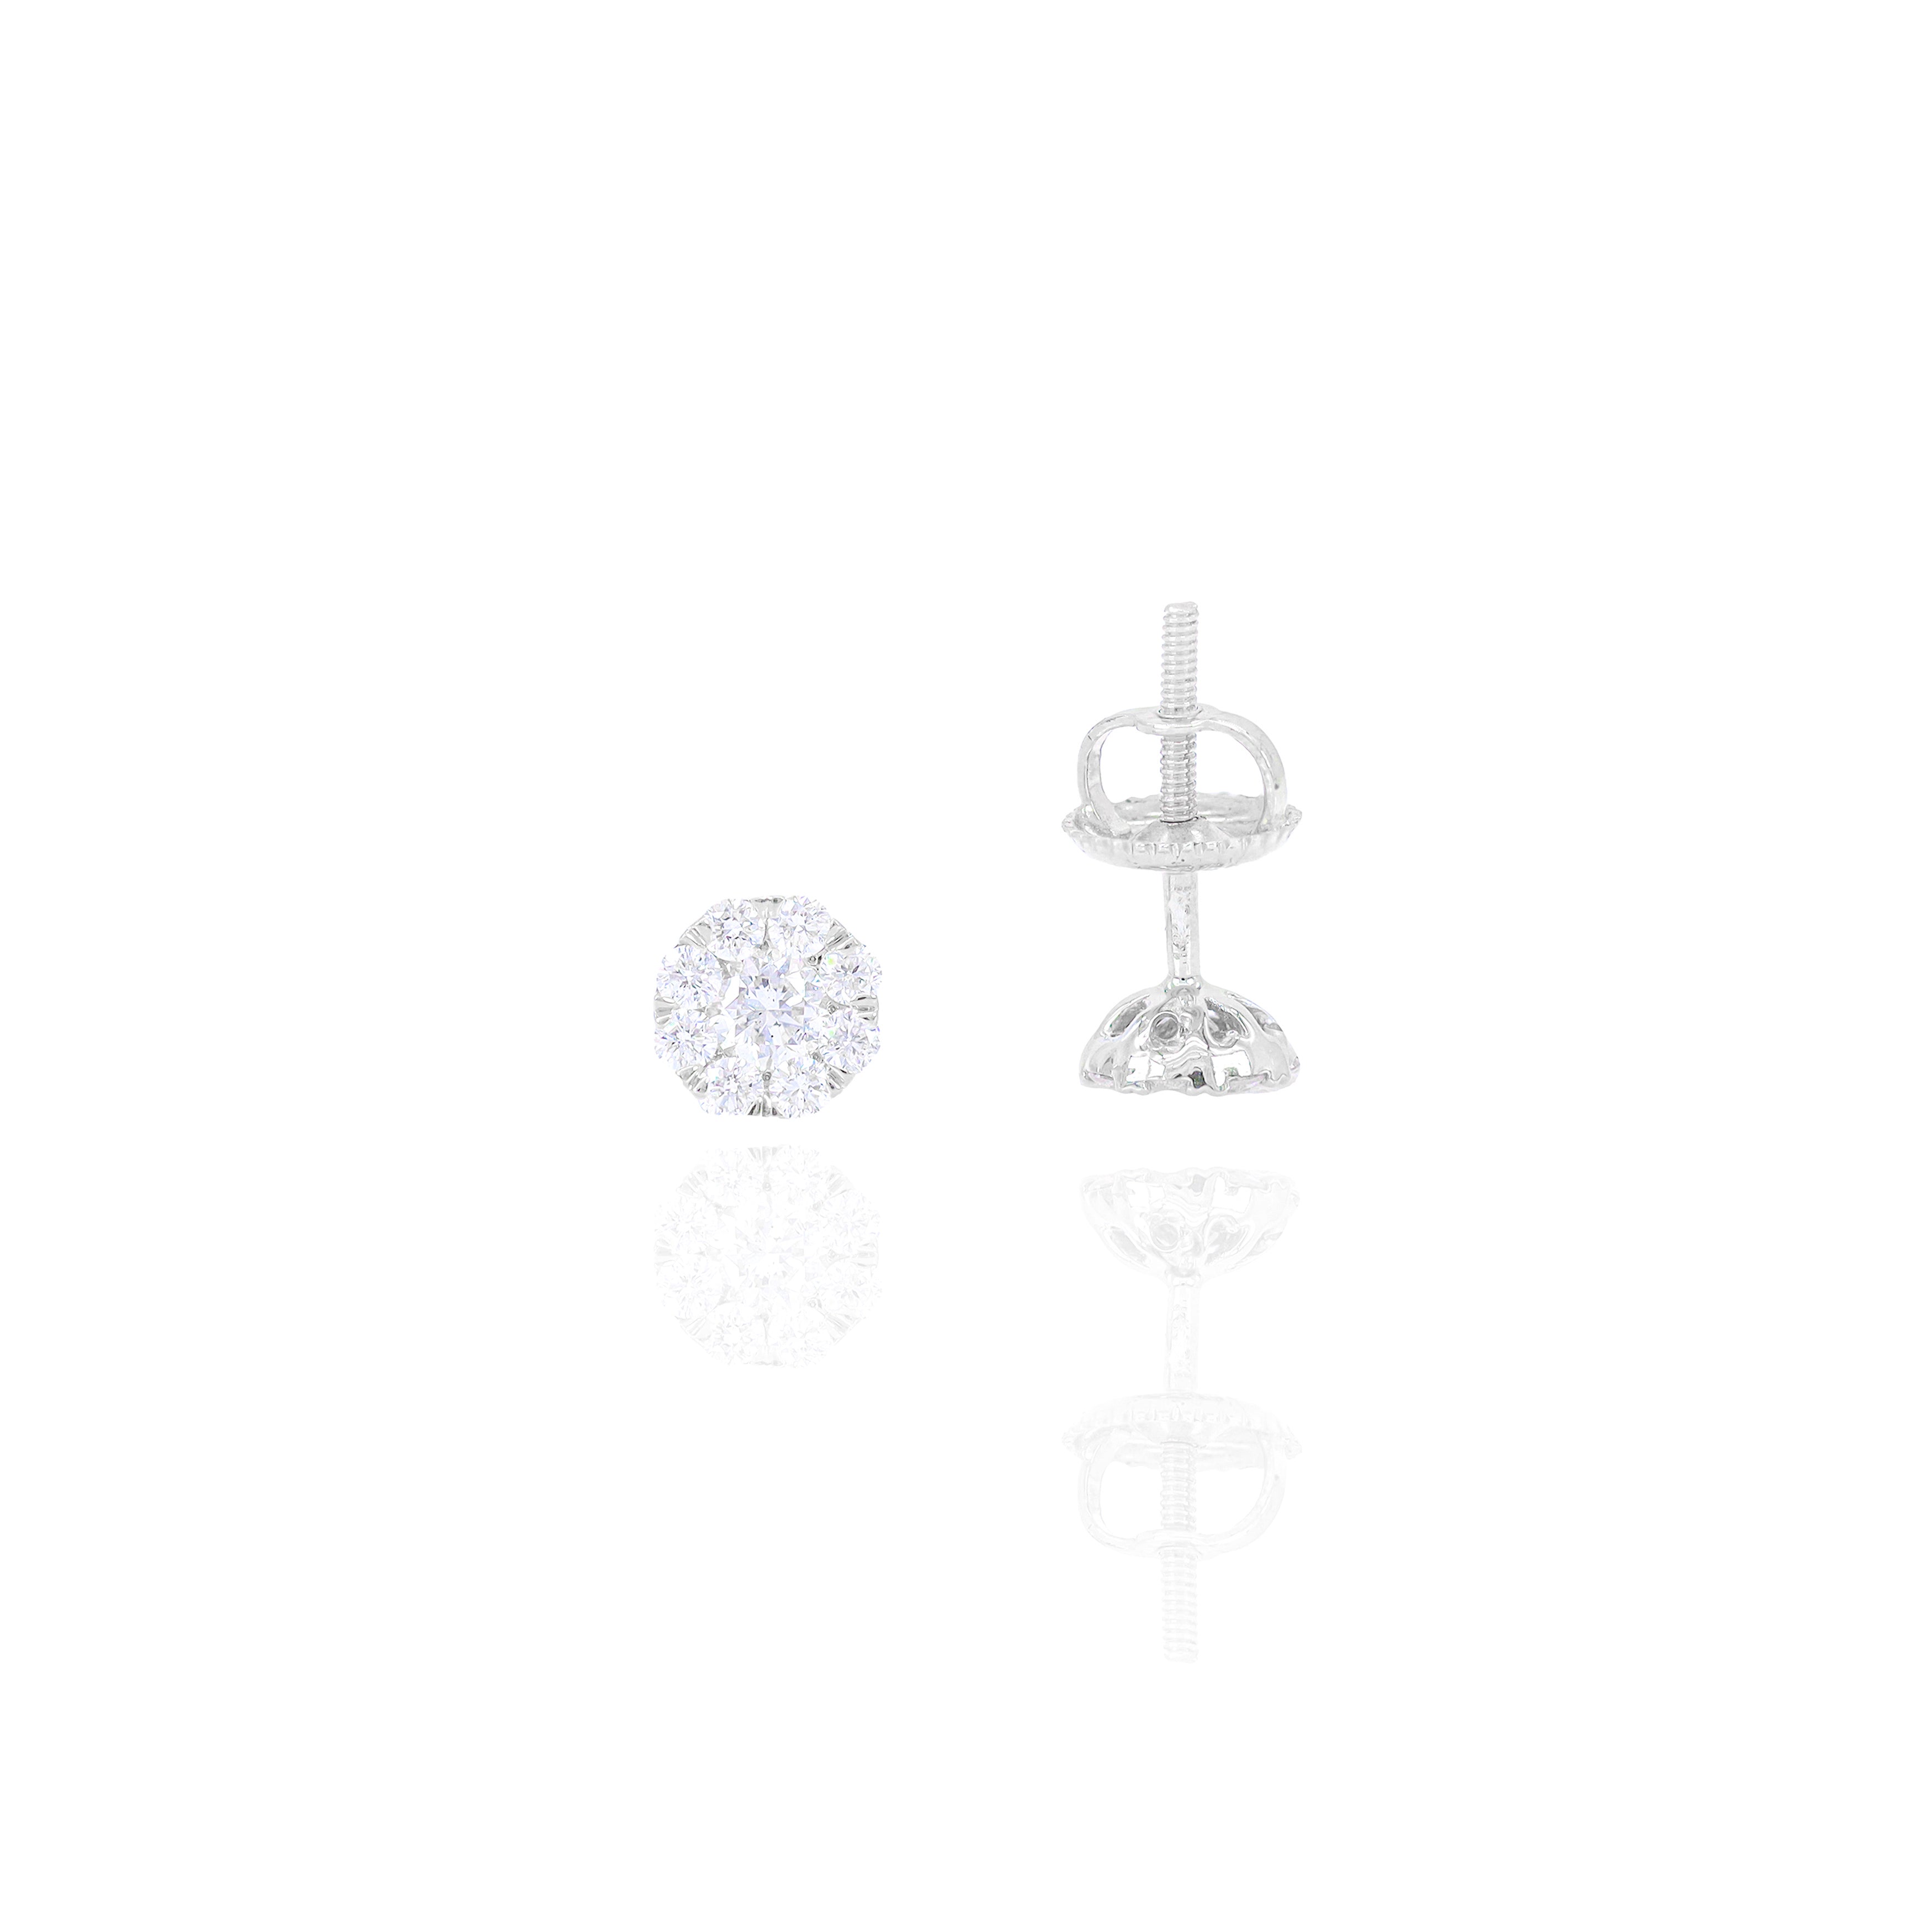 1/2 (Half) Carat Cluster Pauve Diamond Earrings